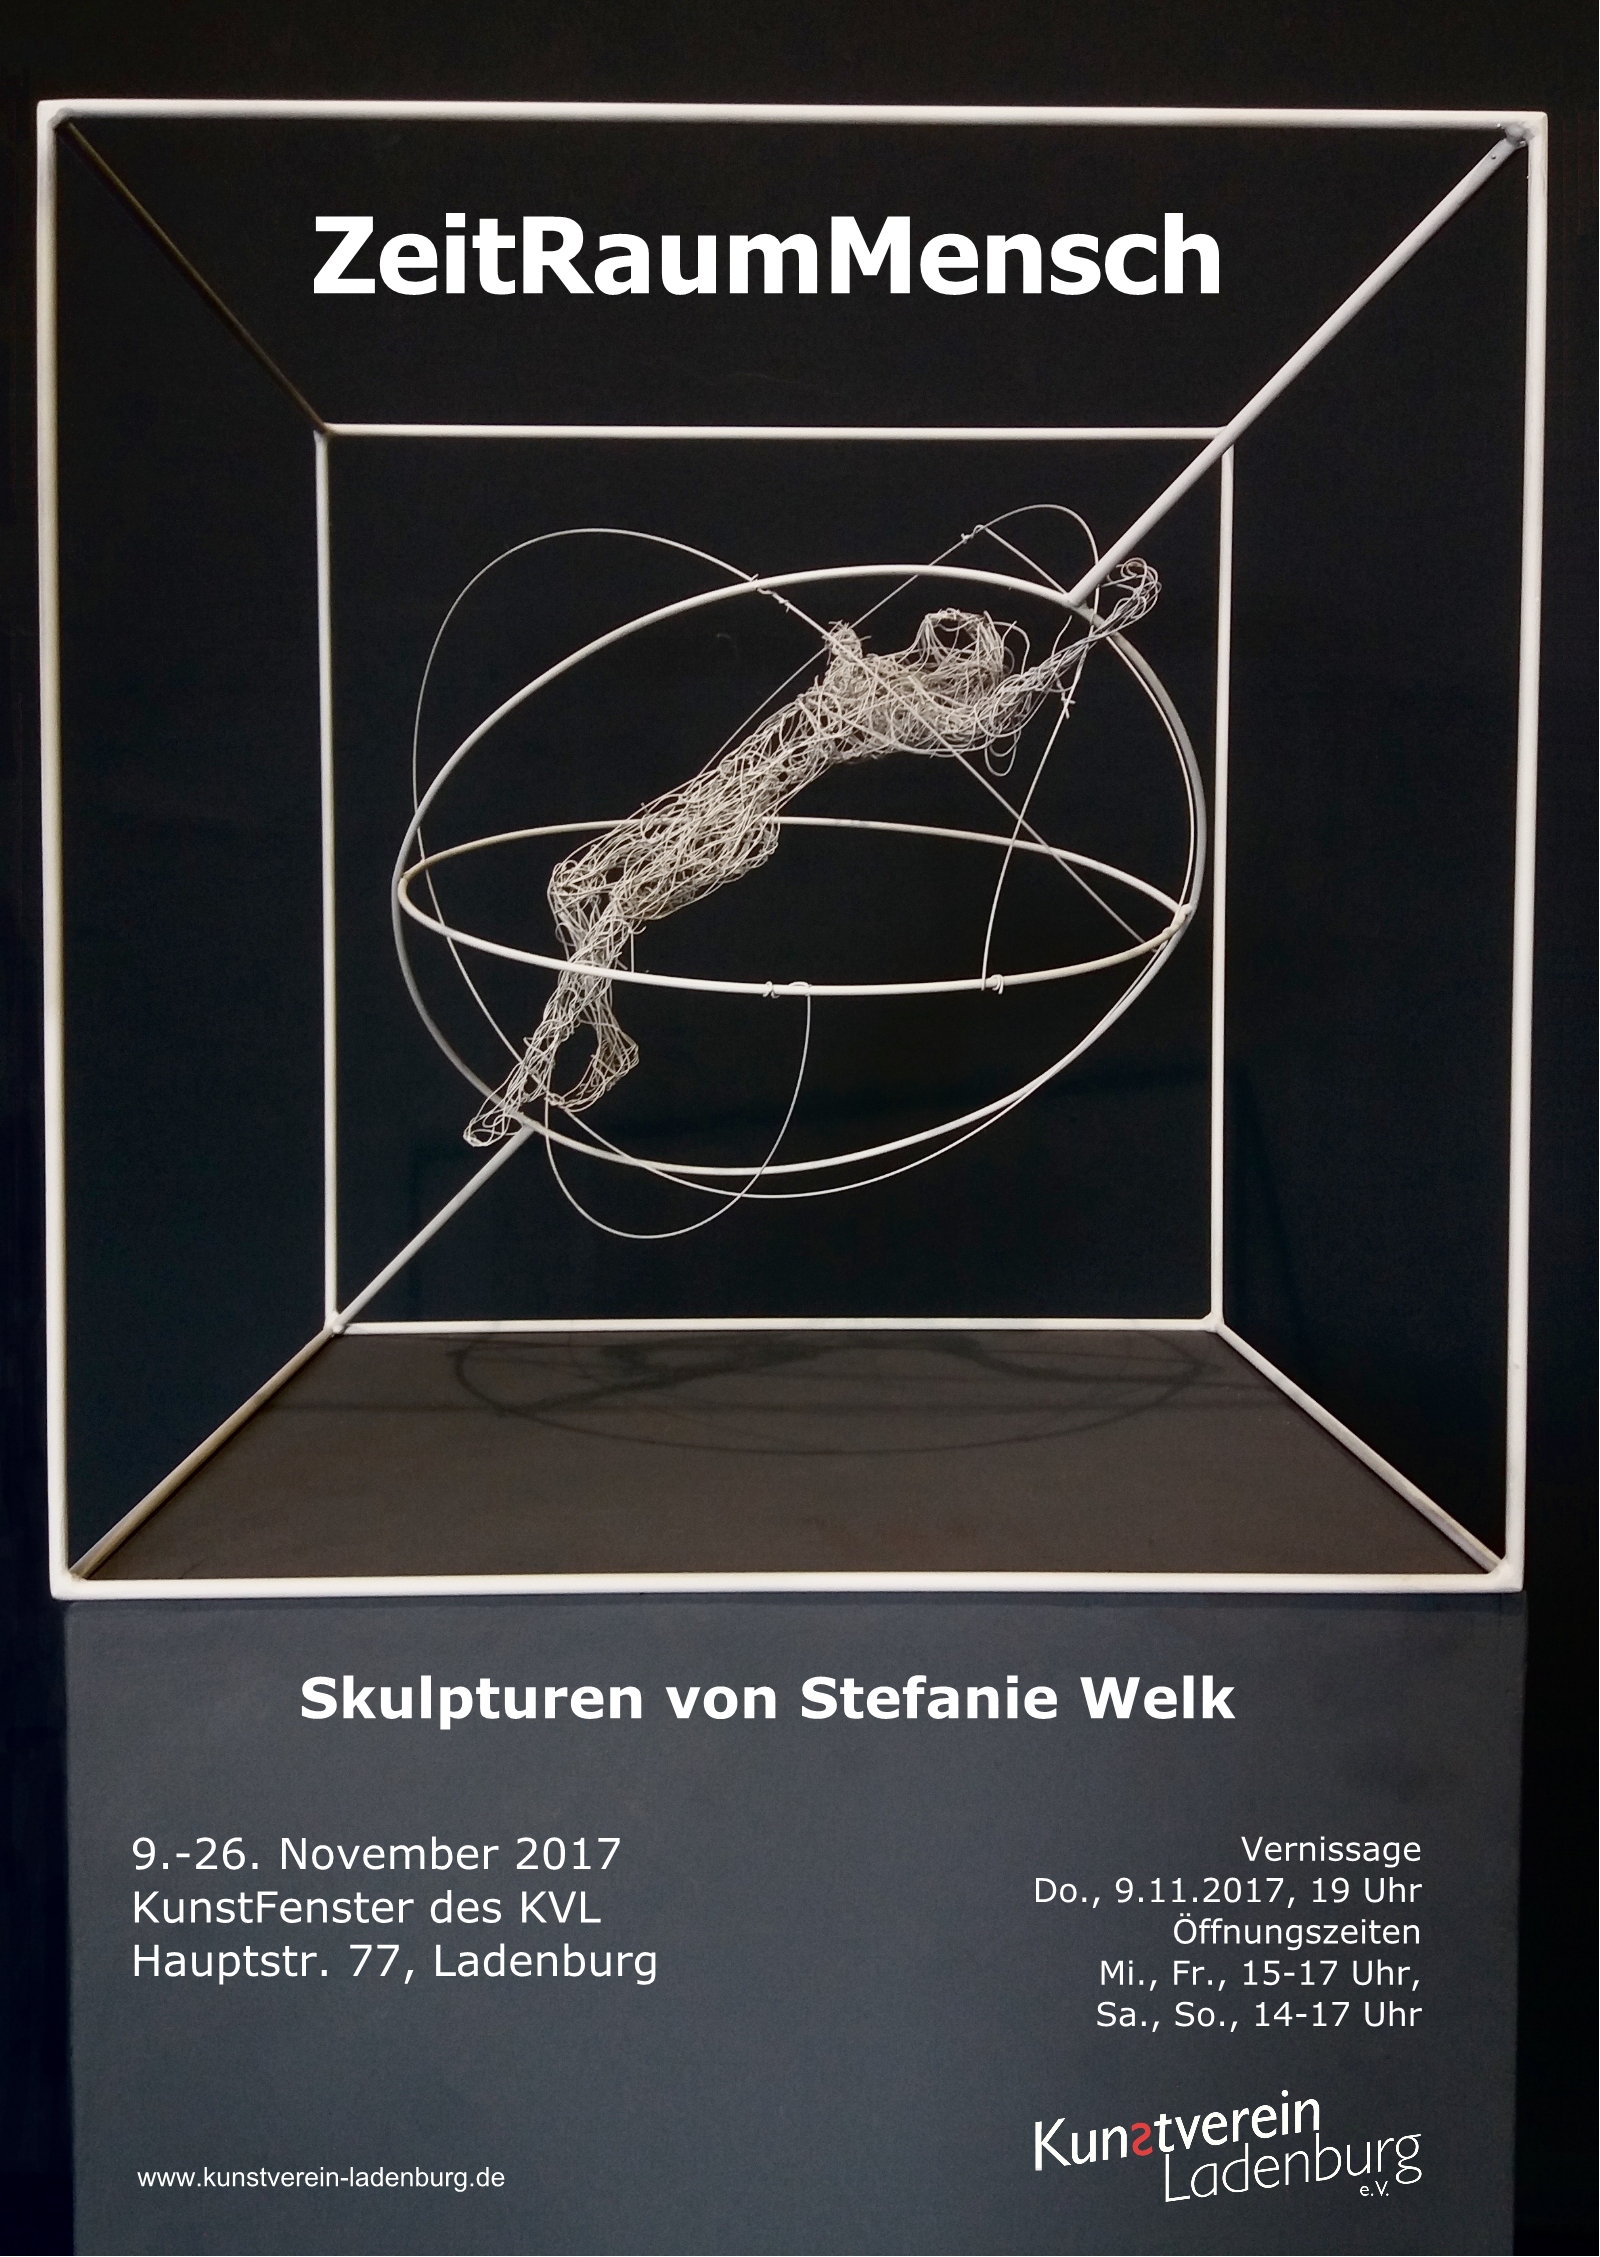 /images/kvl/Ausstellungen/20171109_StefanieWelk_ZeitRaumMensch/original/00_plakatWelk.jpg